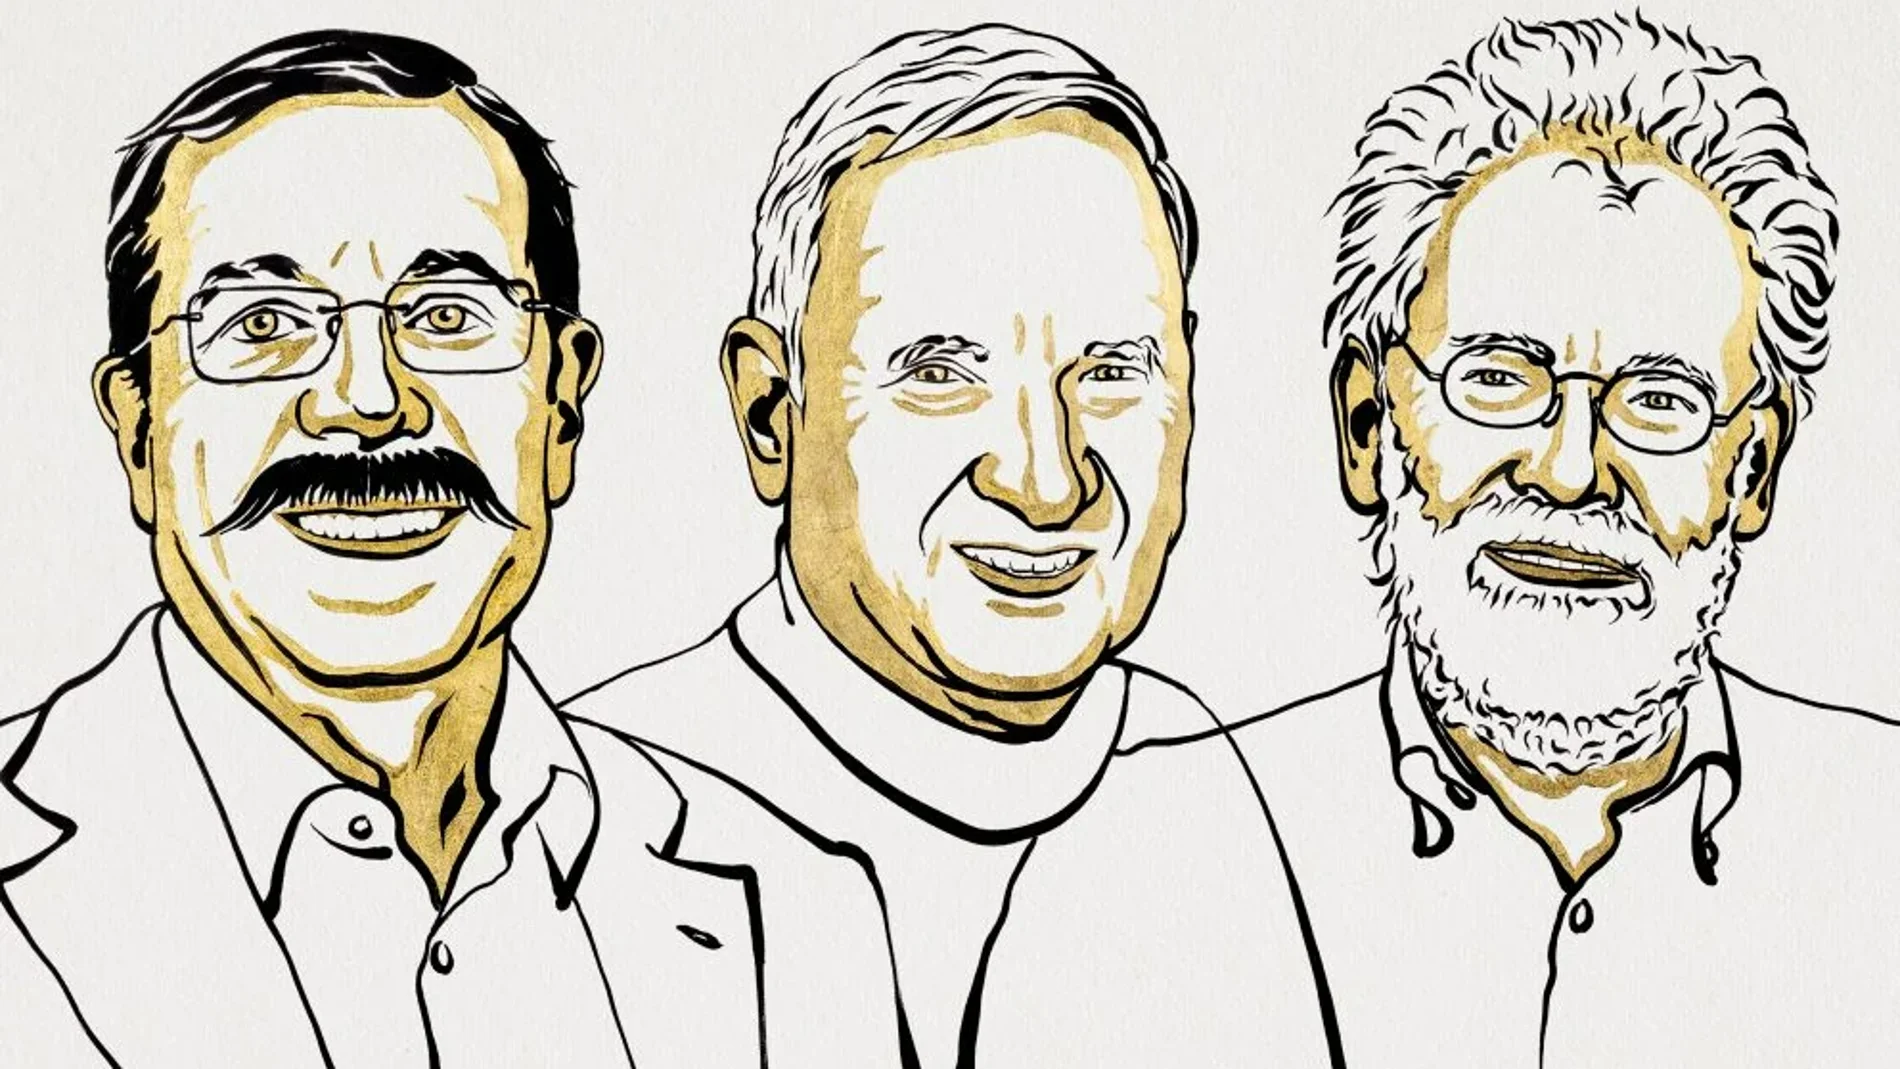 Premio Nobel de Física para los científicos Alain Aspect, John F. Clauser y Anton Zeilingier